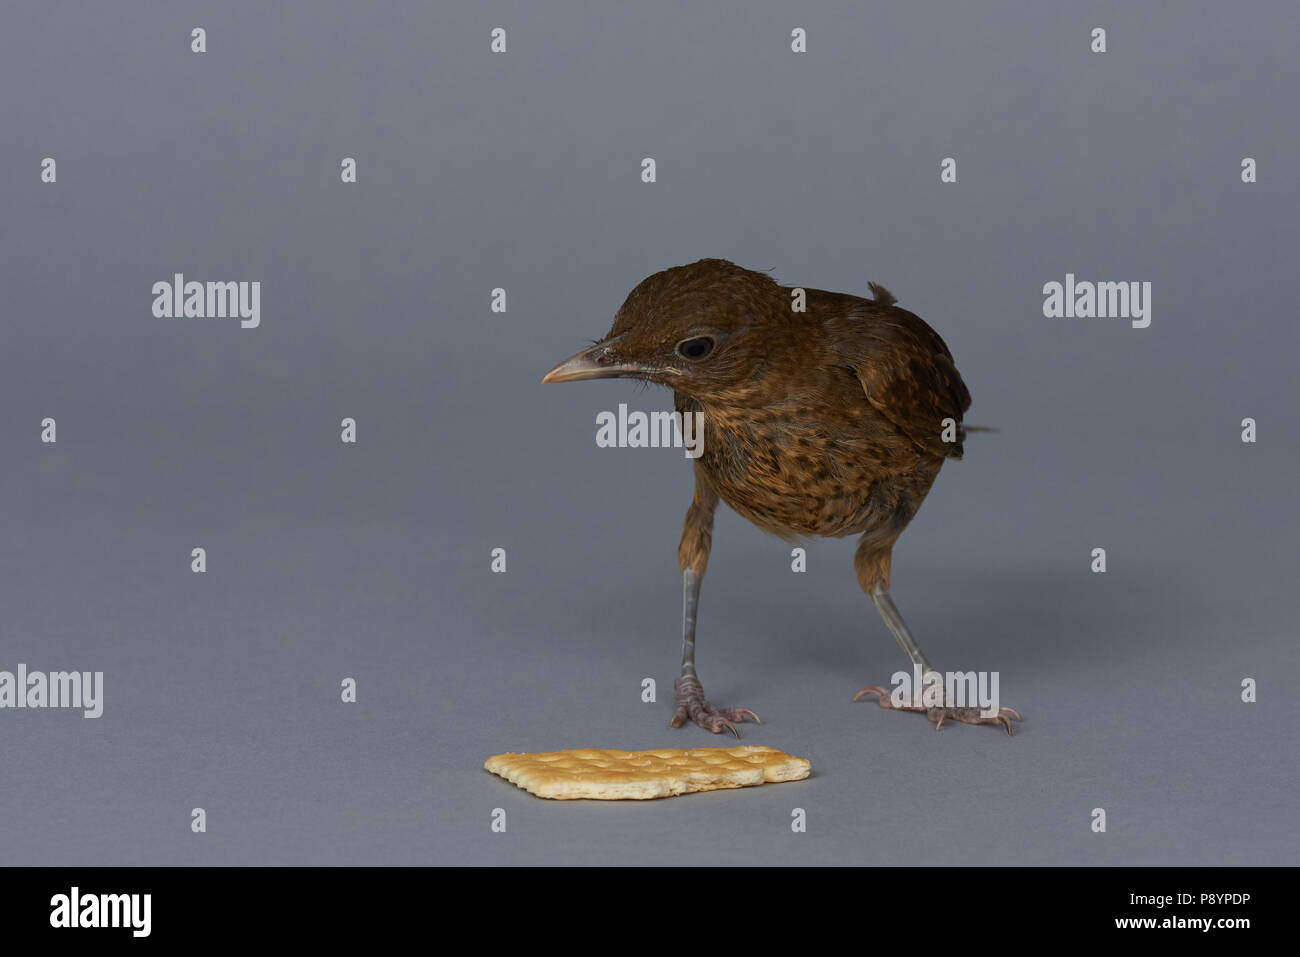 Piccolo uccello guardare cookie isolato su sfondo grigio Foto Stock